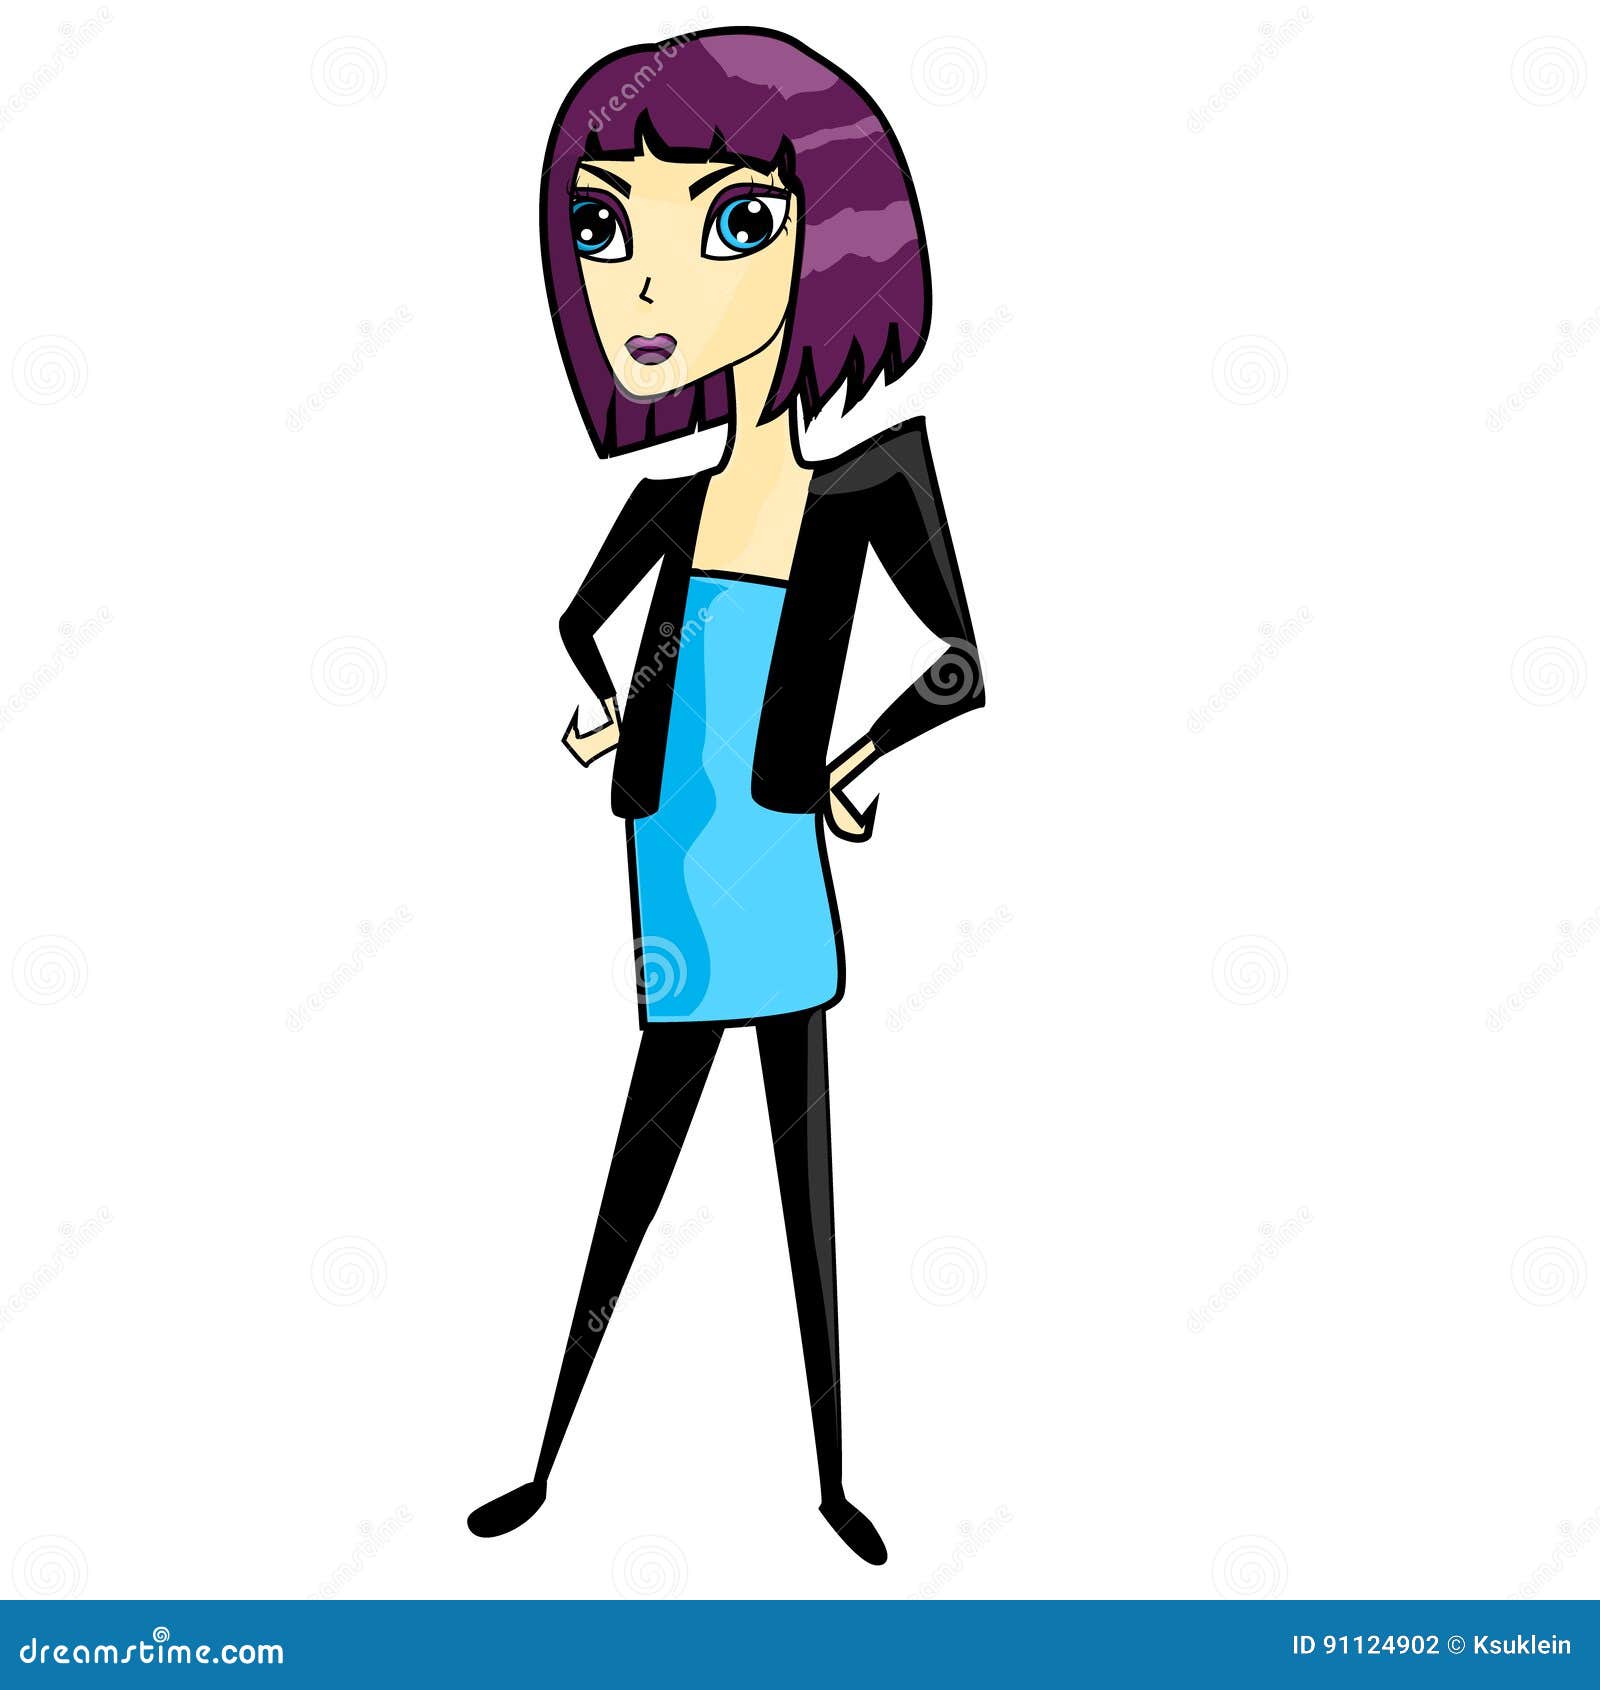 Brunette Healthy Skinny Girl Cartoon Character Illustration